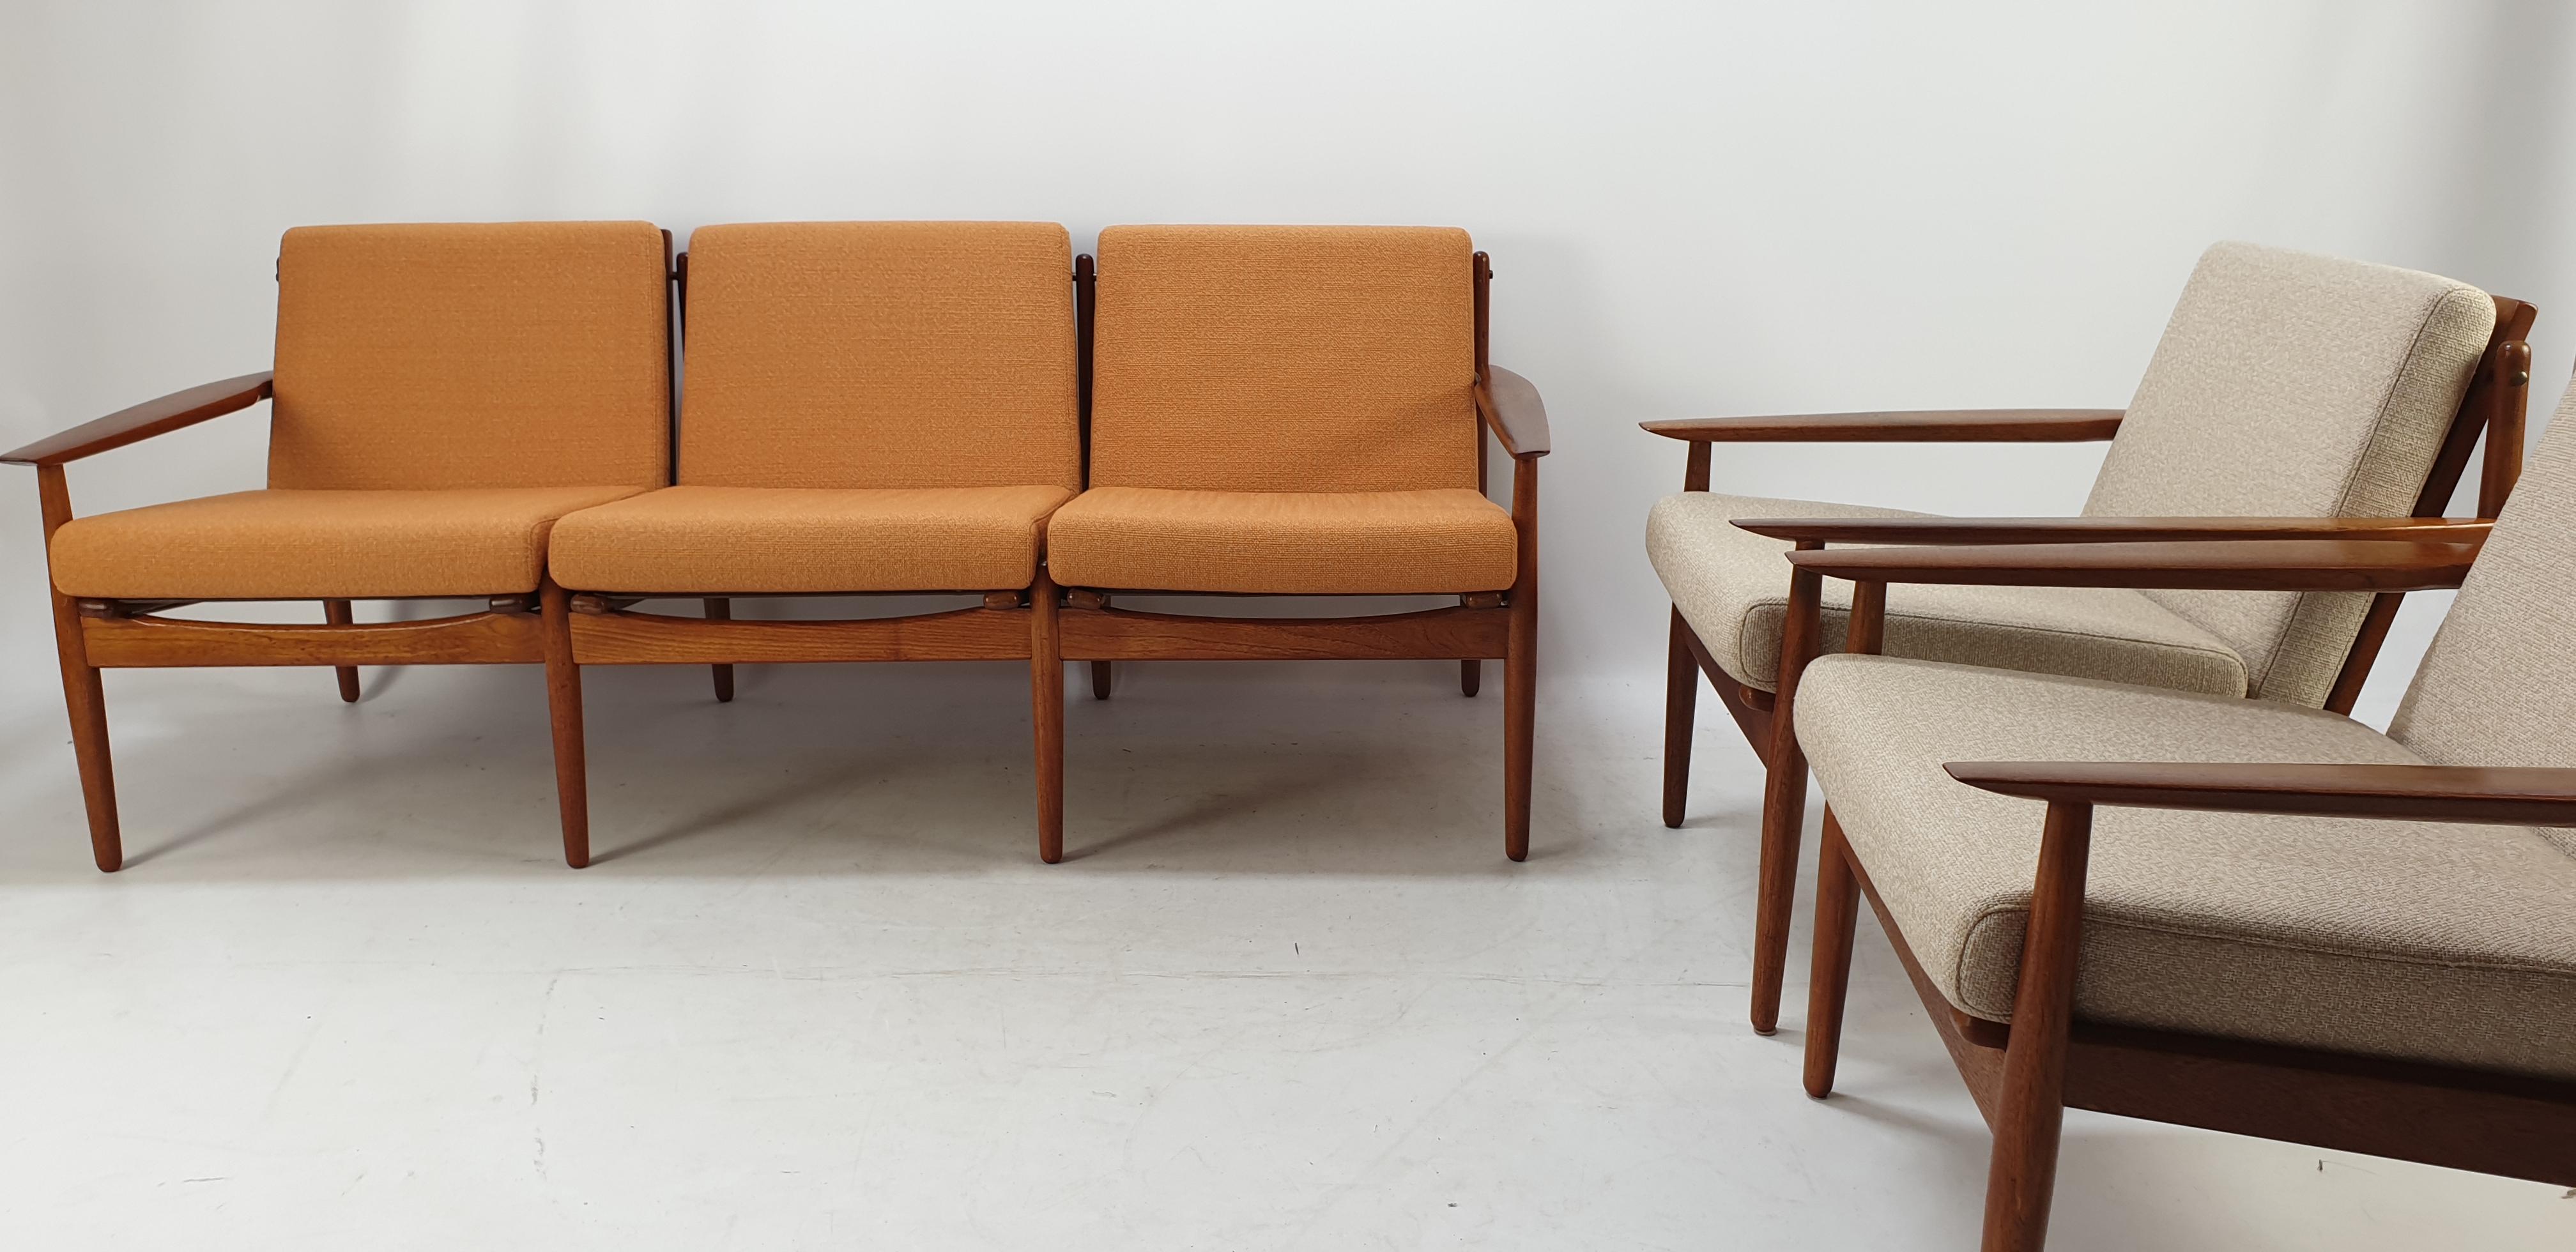 Cet élégant ensemble de salon a été conçu par Svend Åge Eriksen et fabriqué au Danemark par Glostrup Møbelfabrik dans les années 1960. Ce bel ensemble comprend un canapé 3 places et deux chaises longues. Les pièces ont des cadres en bois de teck et